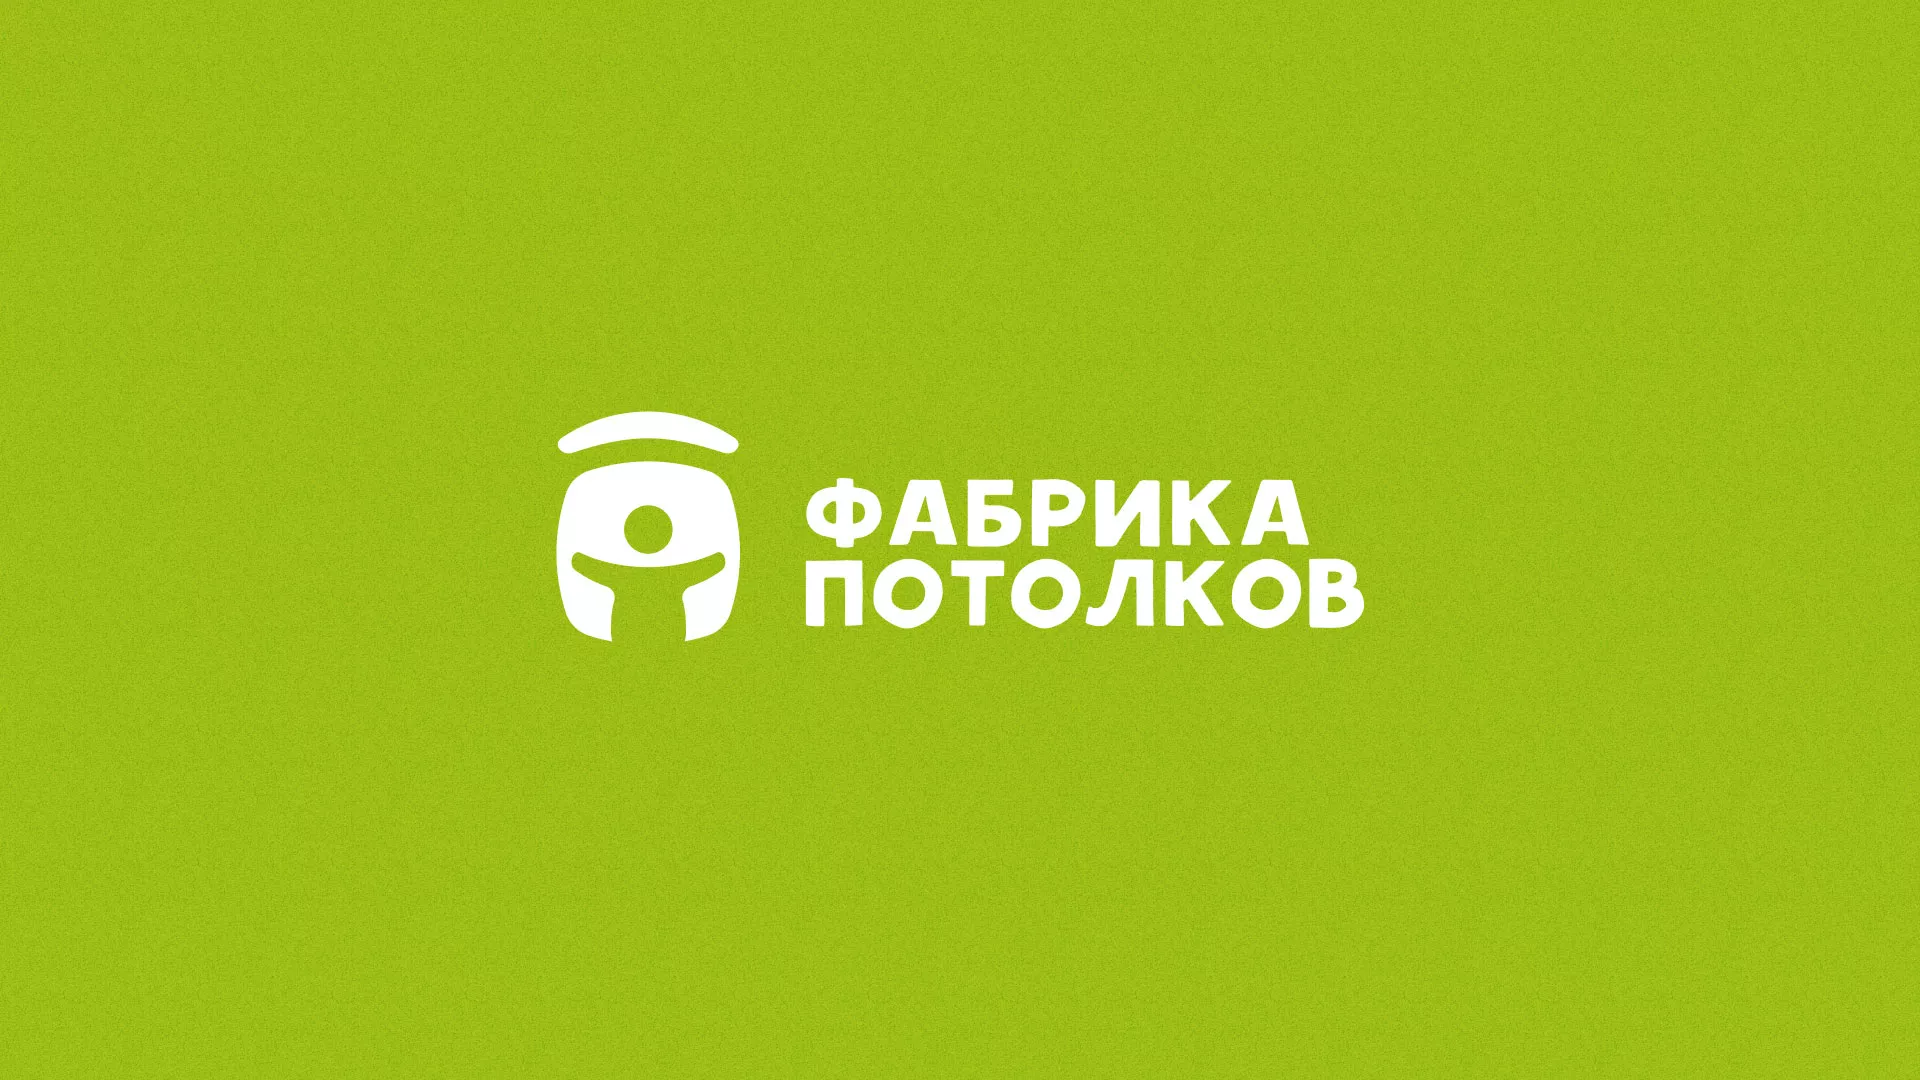 Разработка логотипа для производства натяжных потолков в Лосино-Петровске